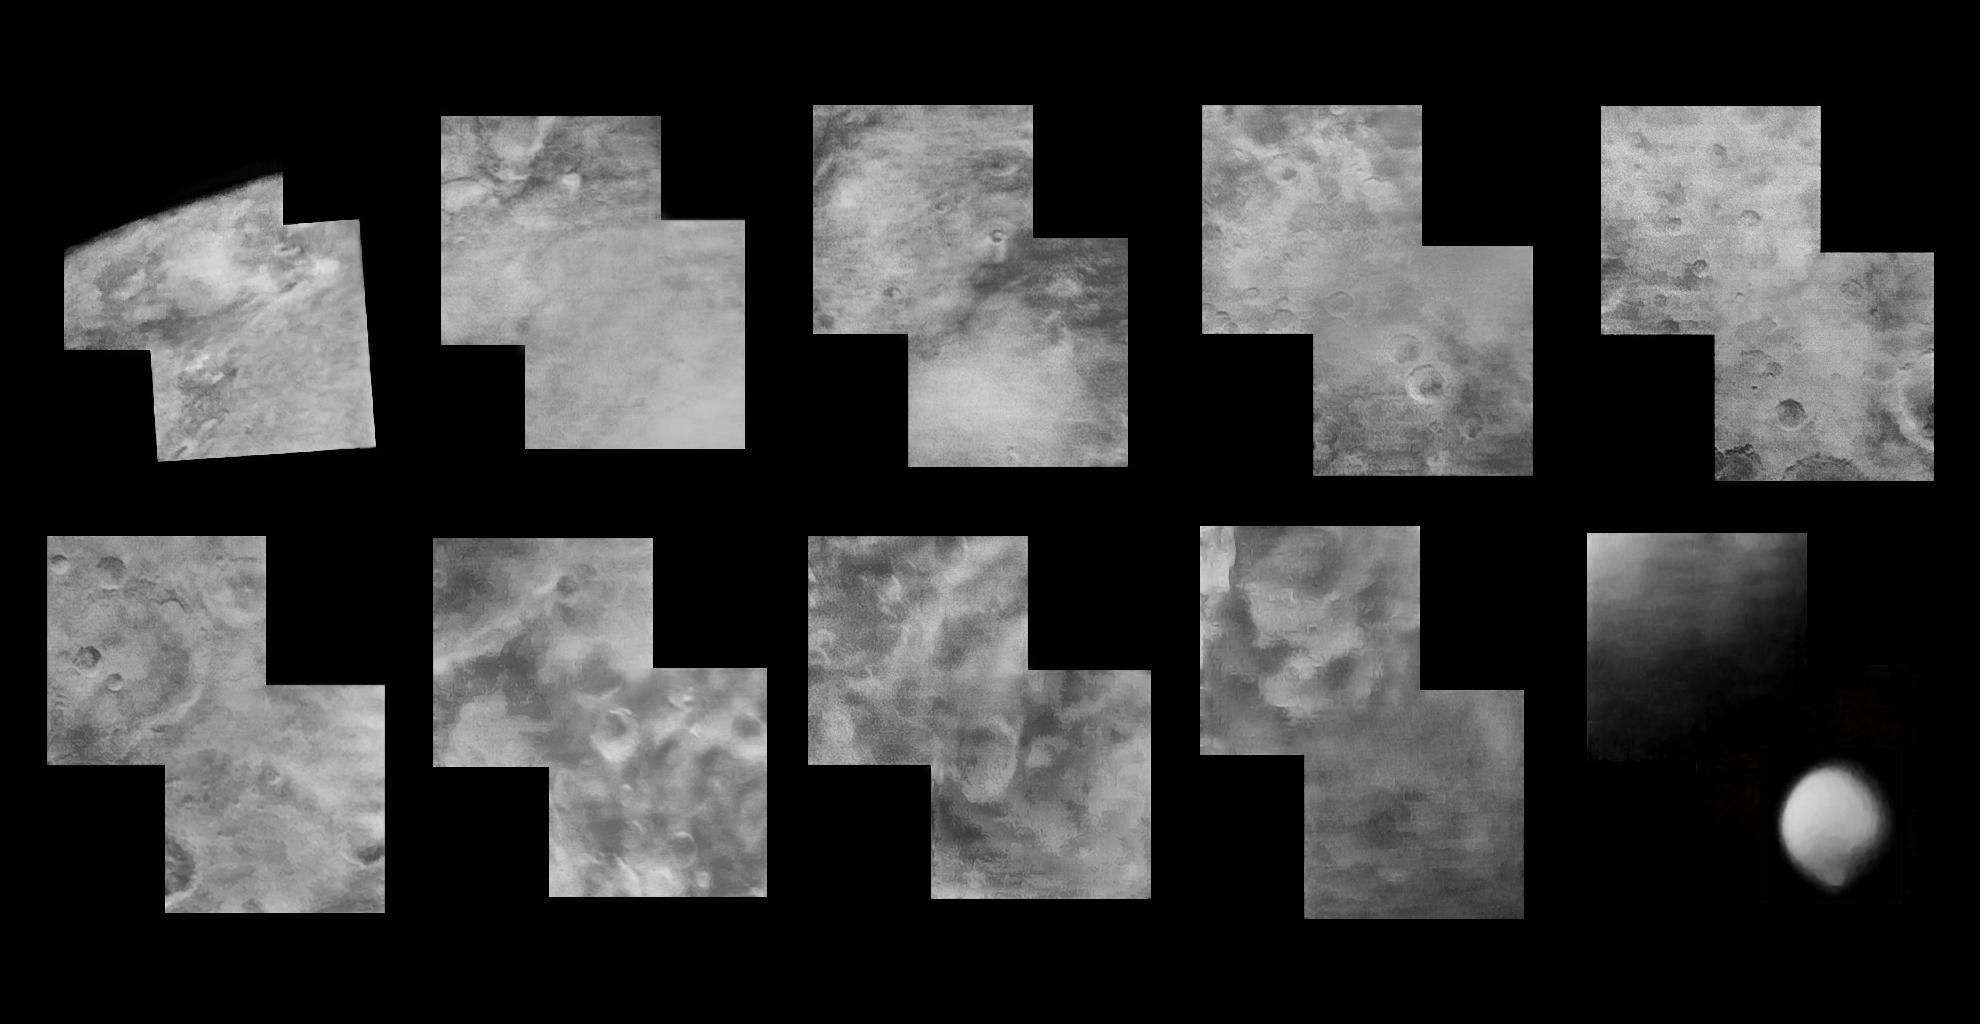 Zusammenstellung der besten Bilder des nahen Mars-Vorbeiflugs von Mariner 4